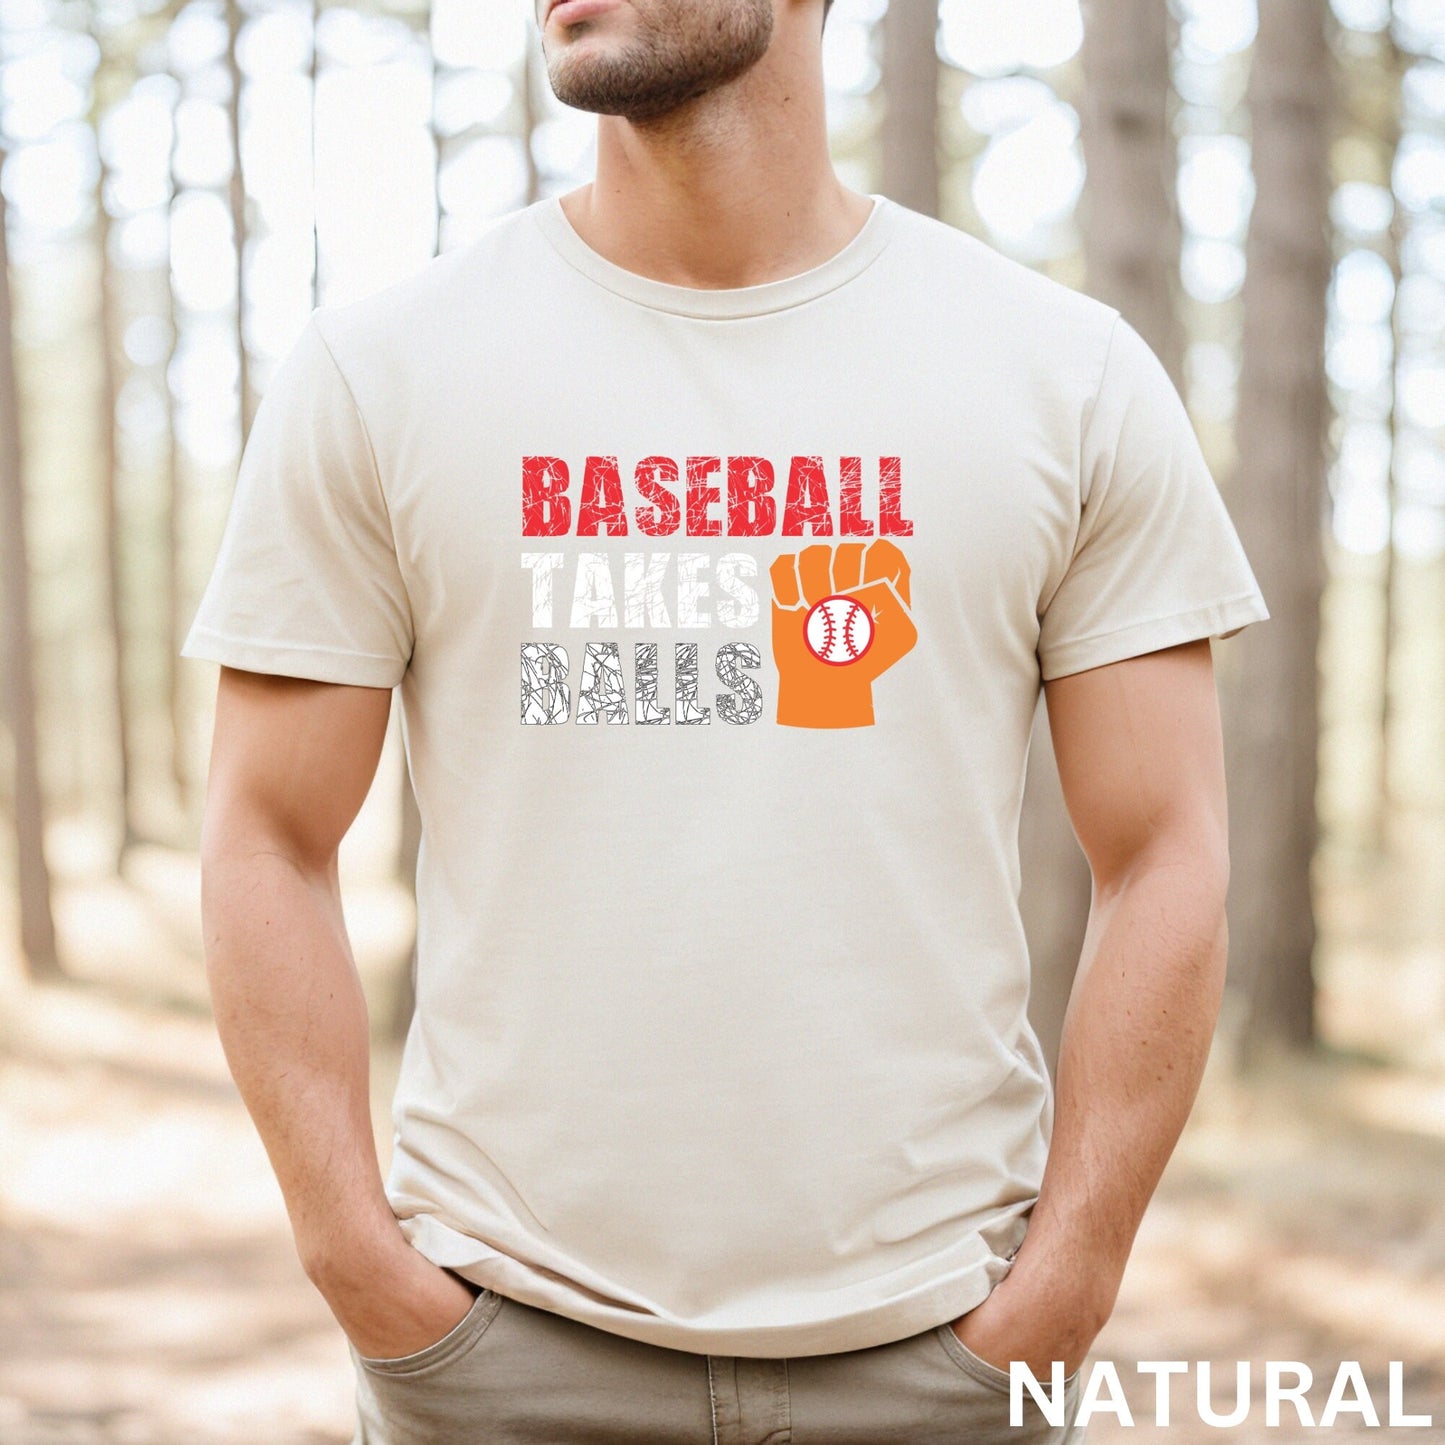 Baseball T-Shirt, Baseball Game Tee, Baseball Player Gift, Baseball Season Shirt, Baseball Tee Gifts, Softball Shirt,Baseball Takes Balls